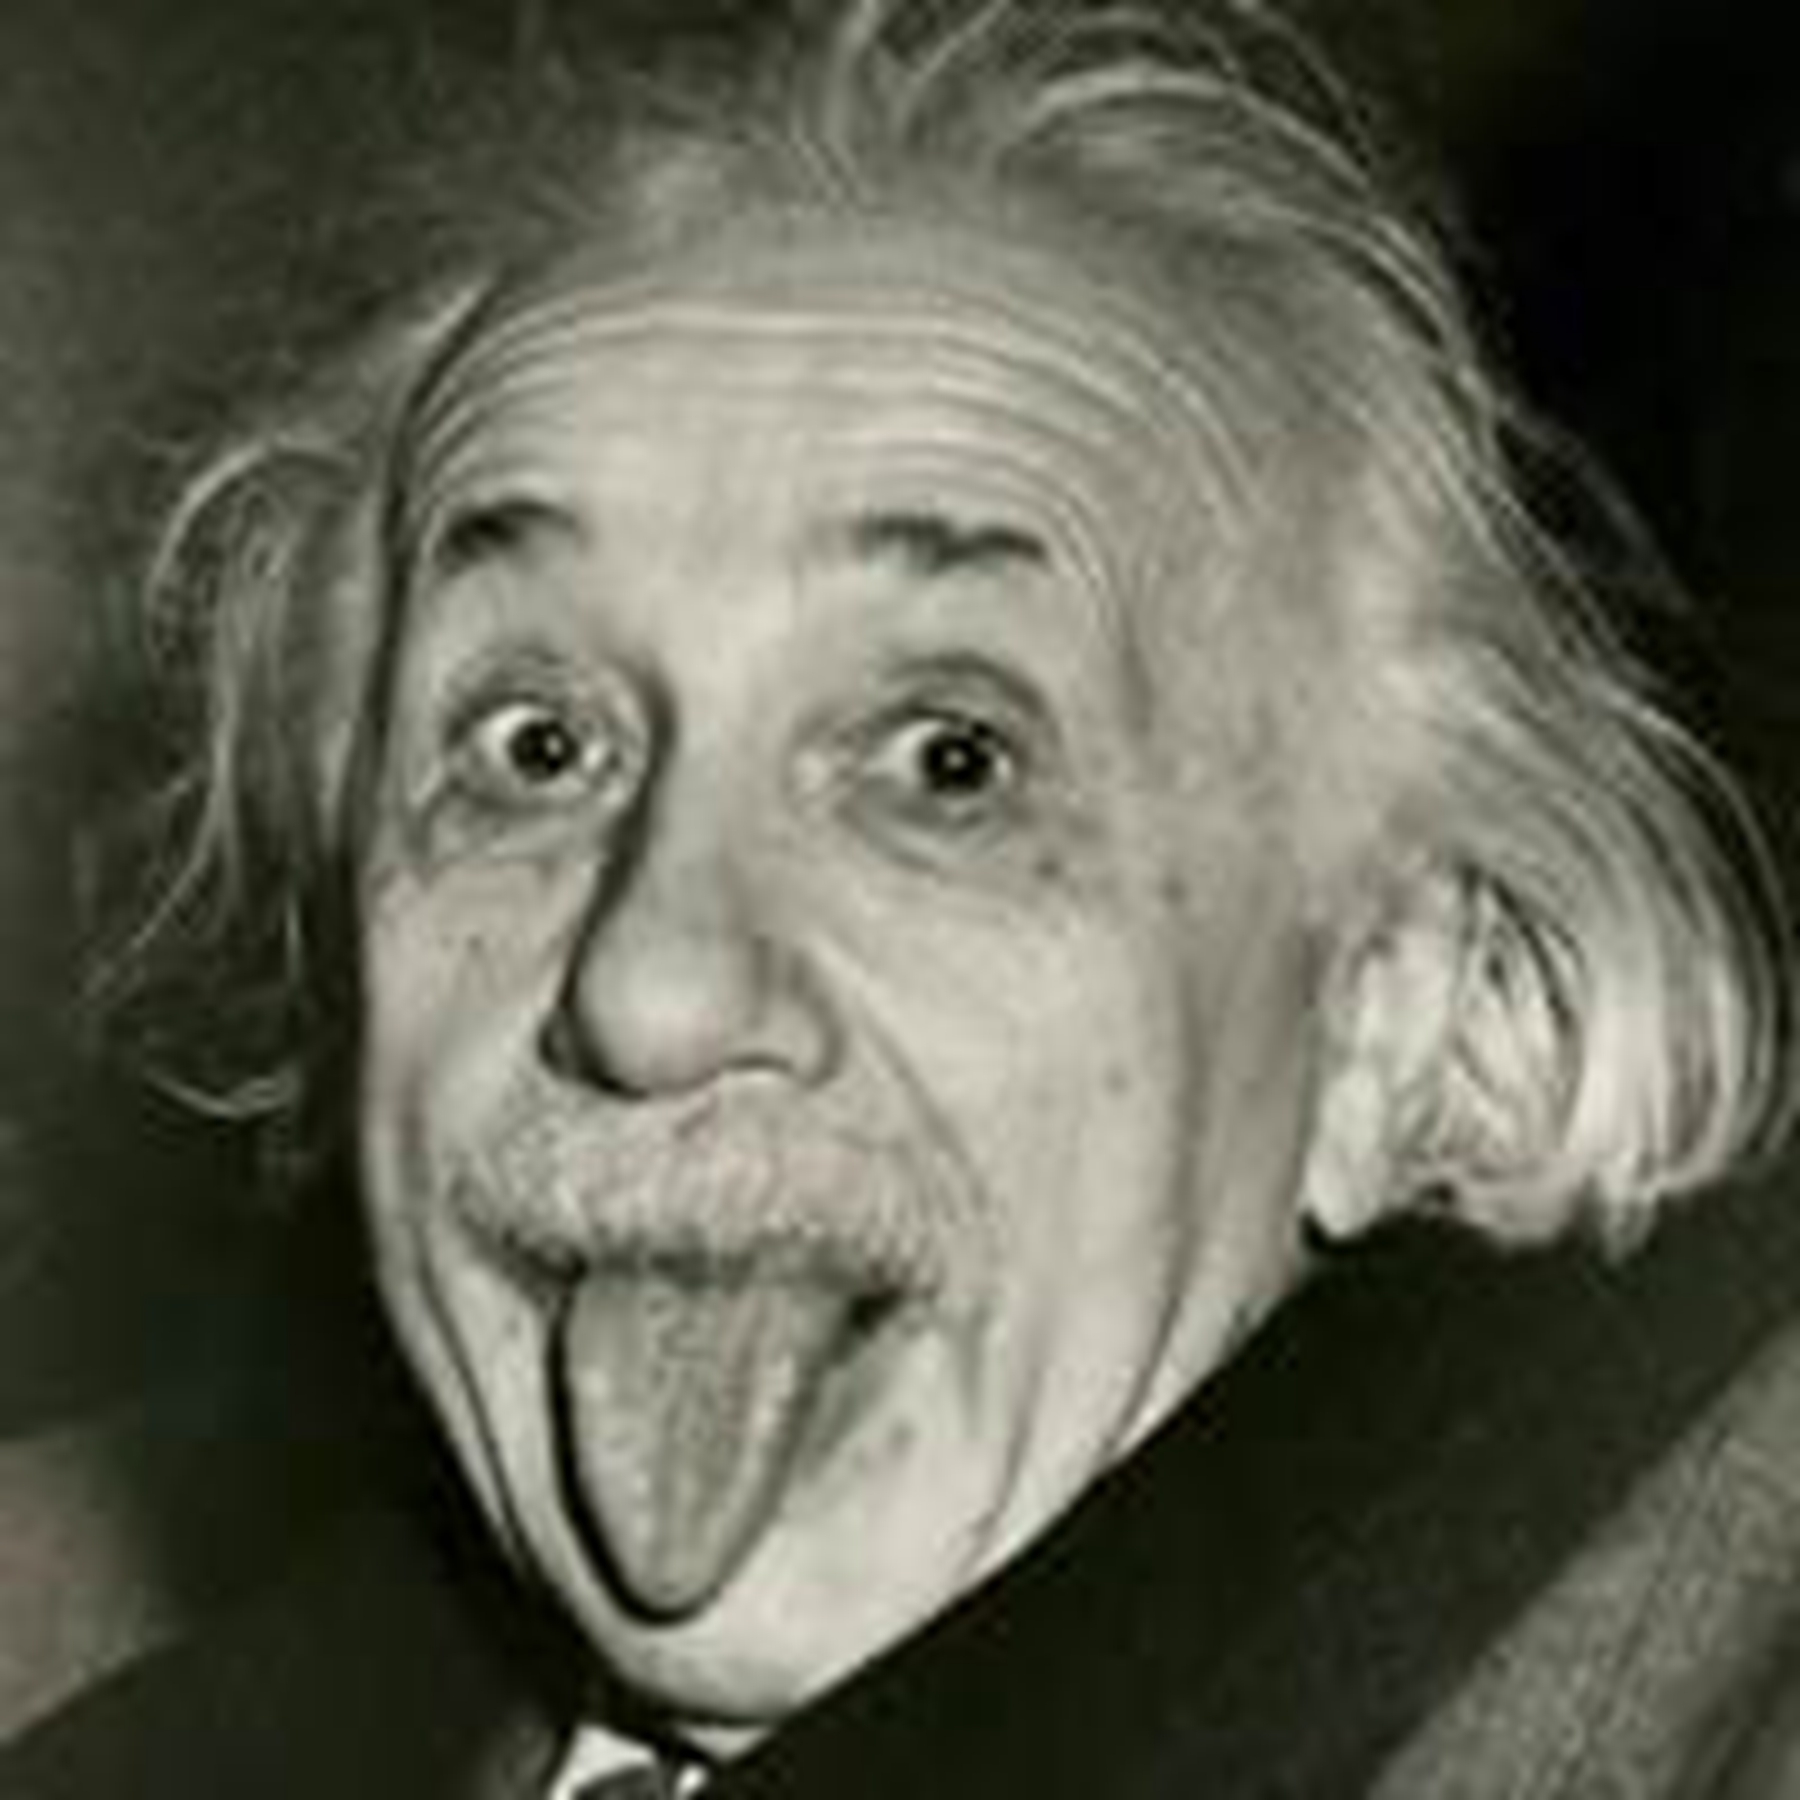 爱因斯坦说过“上帝不掷骰子”，等等，你确定他说过？